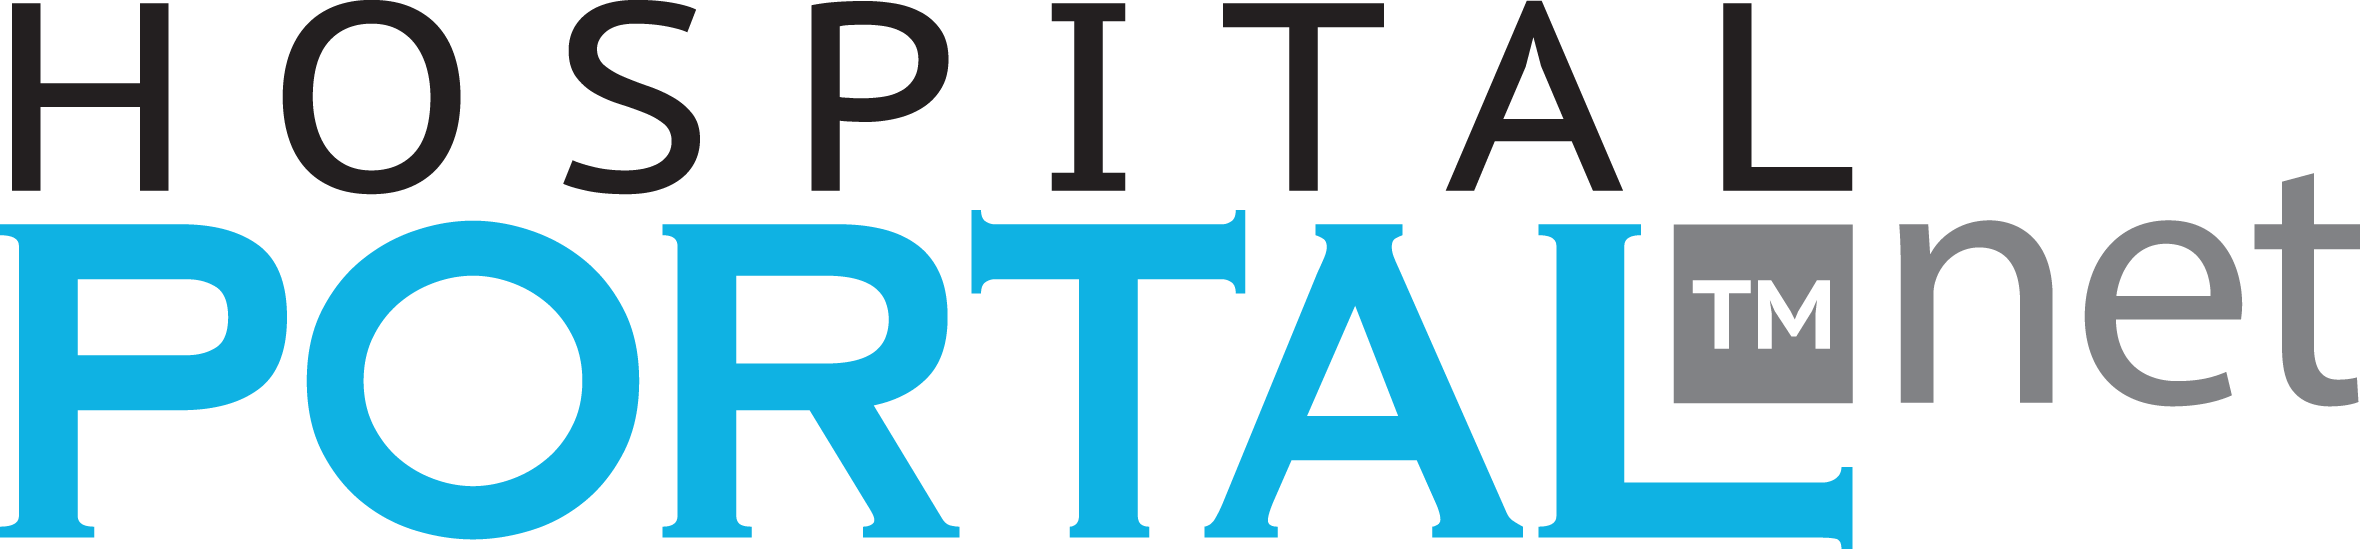 HospitalPortal.net Logo